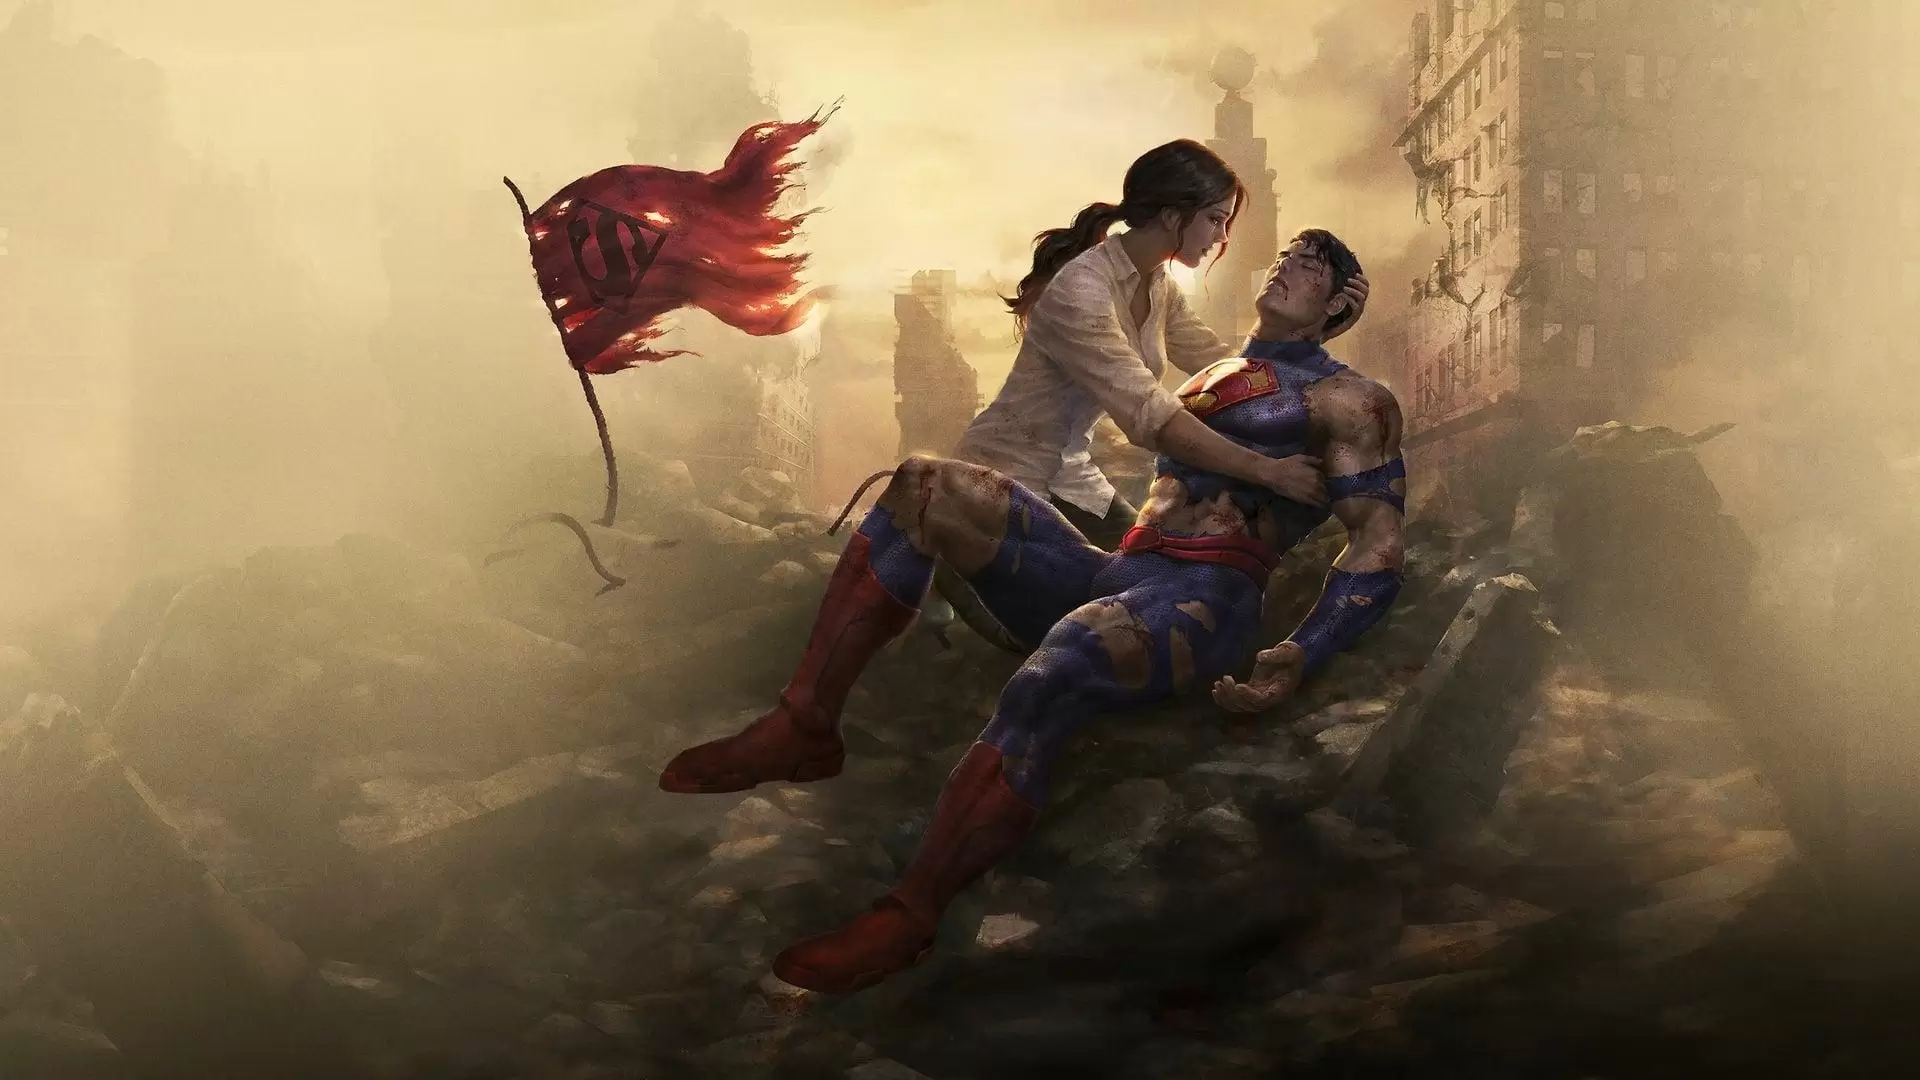 دانلود انیمیشن The Death and Return of Superman 2019 (مرگ و بازگشت سوپرمن) با زیرنویس فارسی و تماشای آنلاین